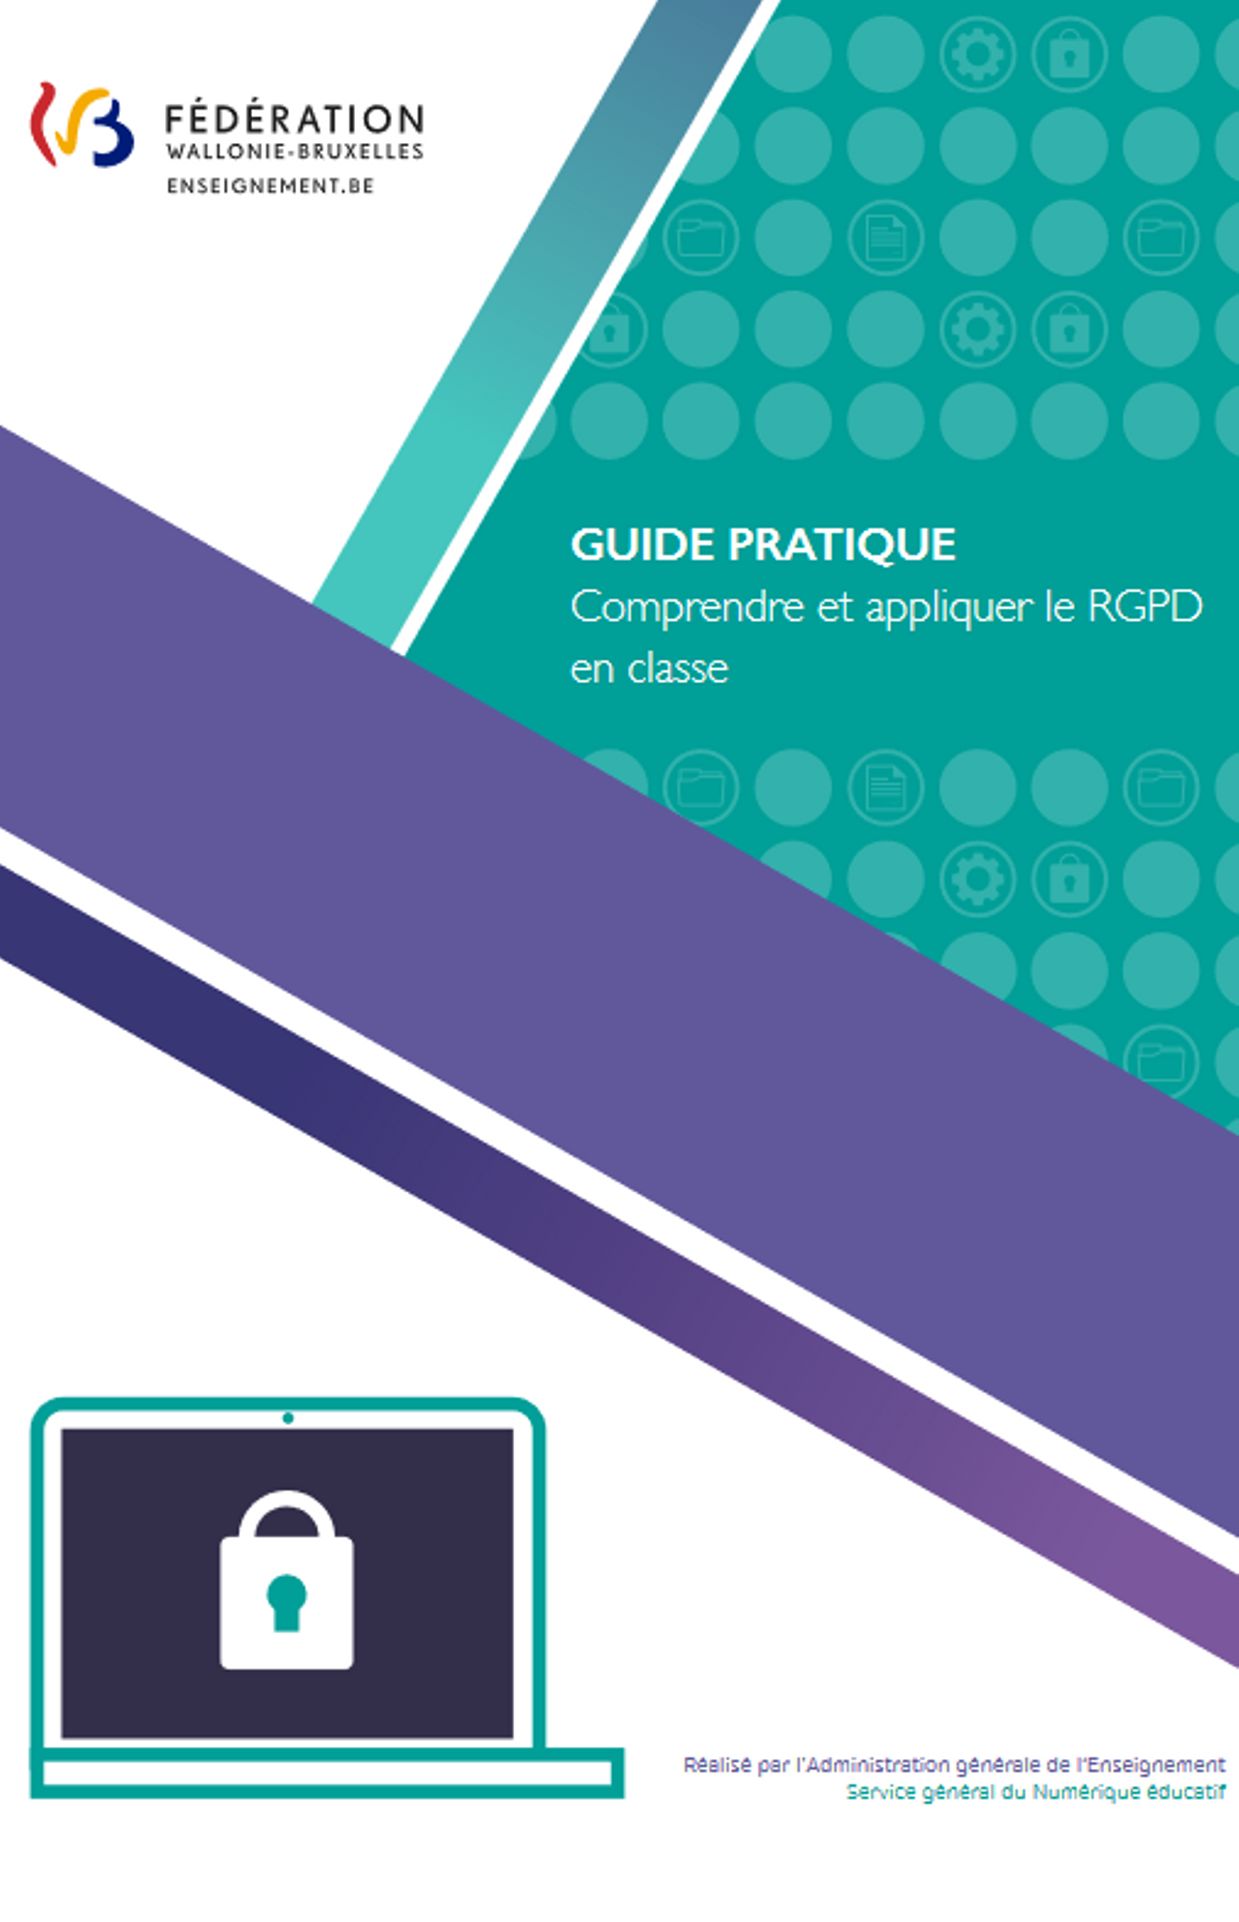 Guide pratique : Comprendre et appliquer le RGPD en classe